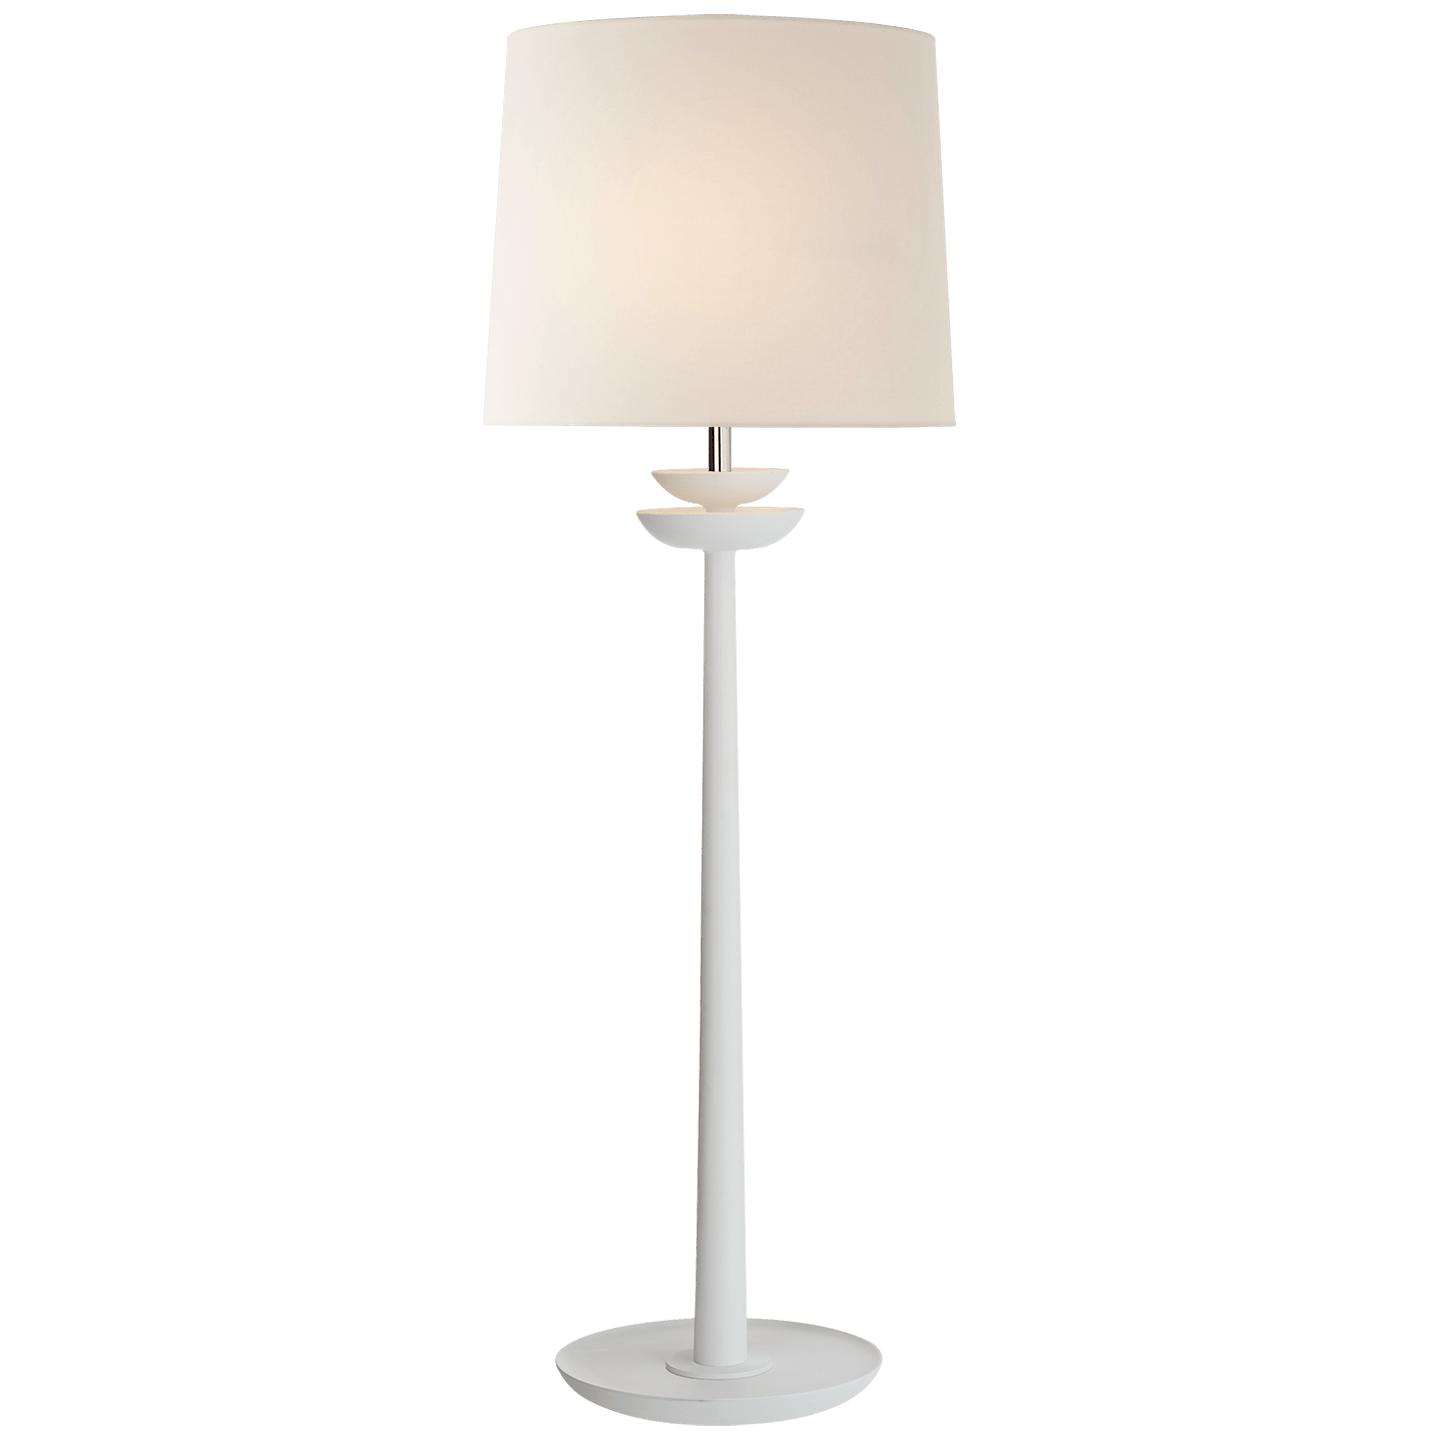 Купить Настольная лампа Beaumont Medium Buffet Lamp в интернет-магазине roooms.ru